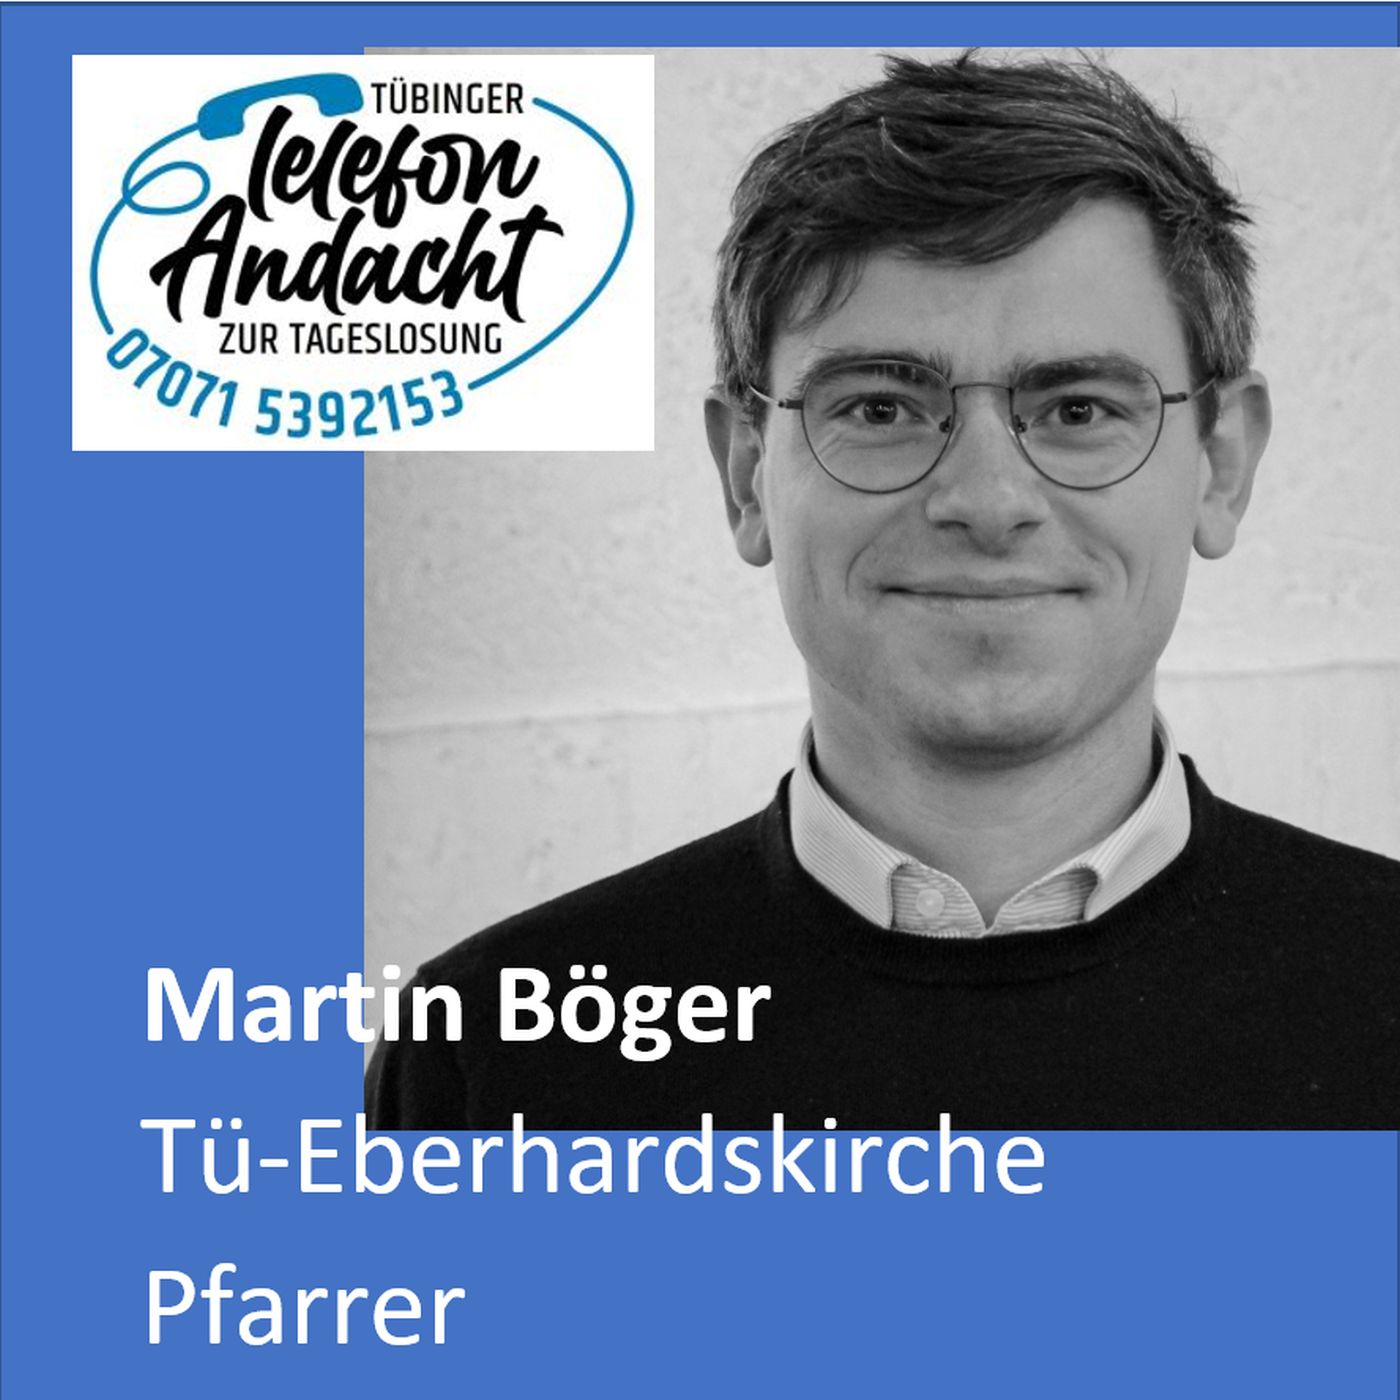 24 04 13 Martin Böger